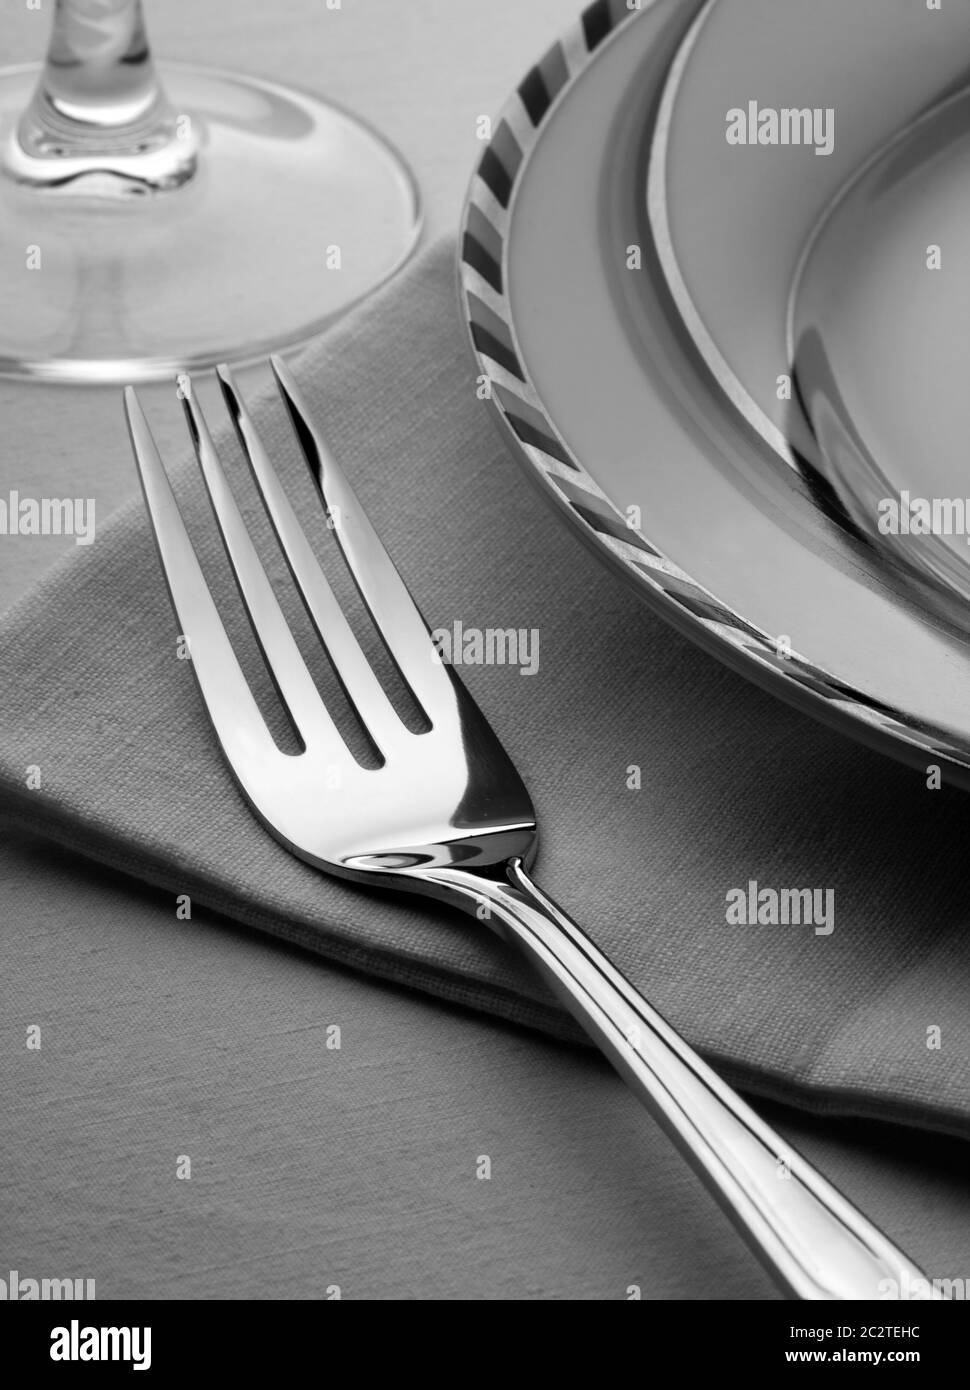 La cena insieme con la forcella, la piastra e il tovagliolo sul tavolo Foto Stock